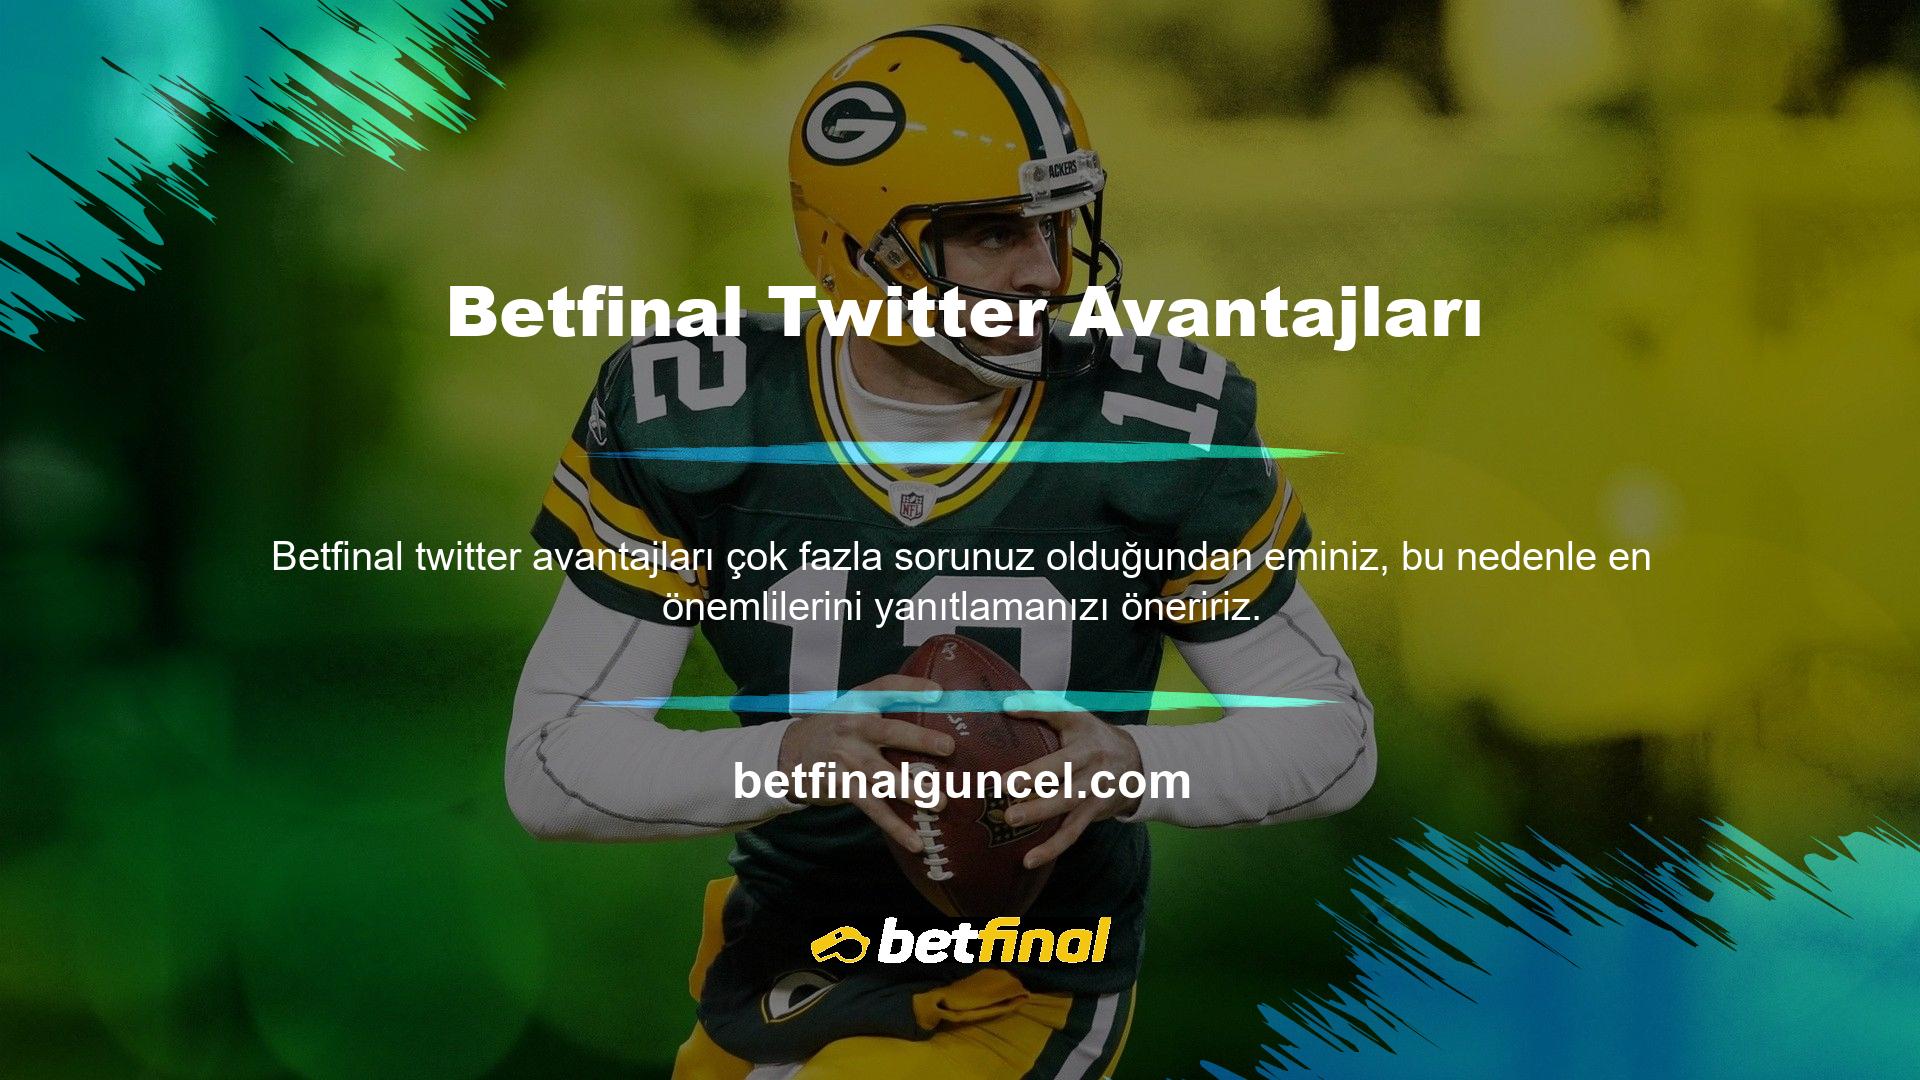 Betfinal Twitter hesabının faydaları Betfinal Twitter hesabını takip etmenin faydaları nelerdir? Betfinal Twitter hesabını takip ederseniz kitapçılarda fark edilirsiniz